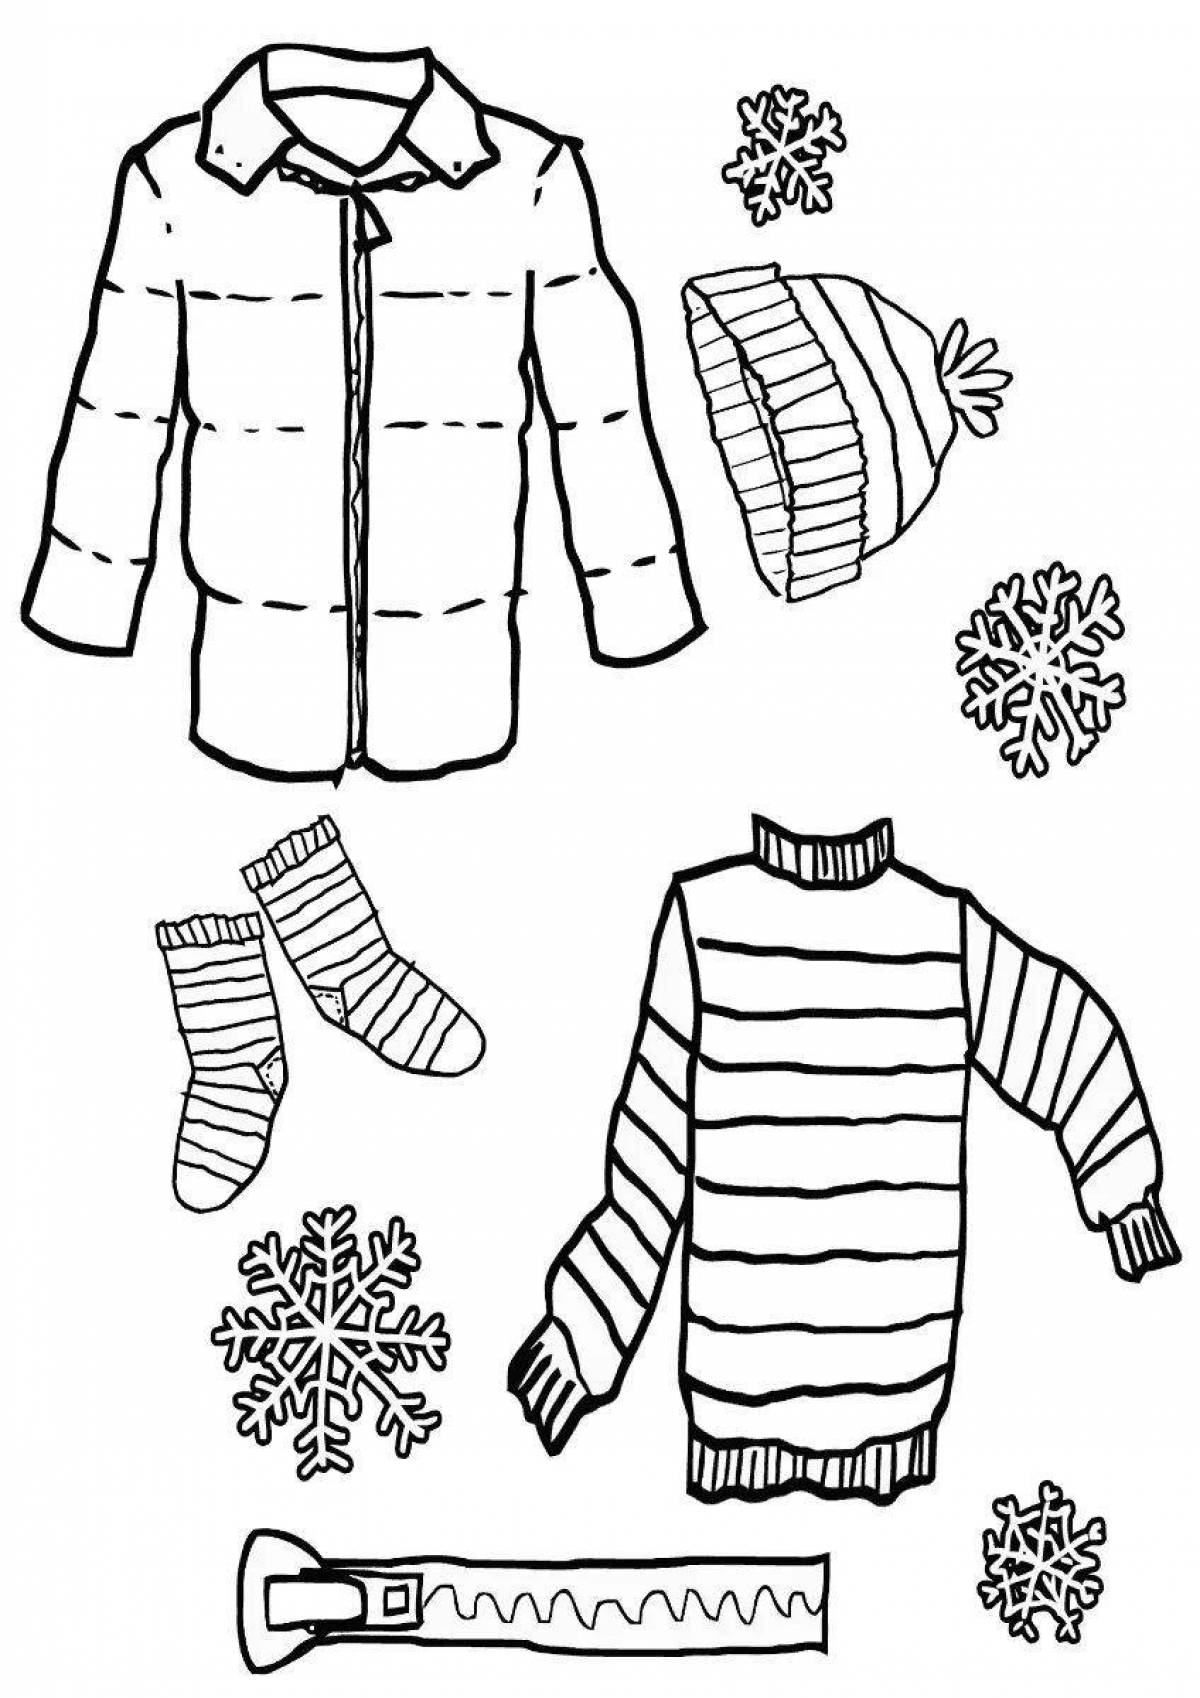 Игривая страница раскраски зимней одежды для детей 4-5 лет